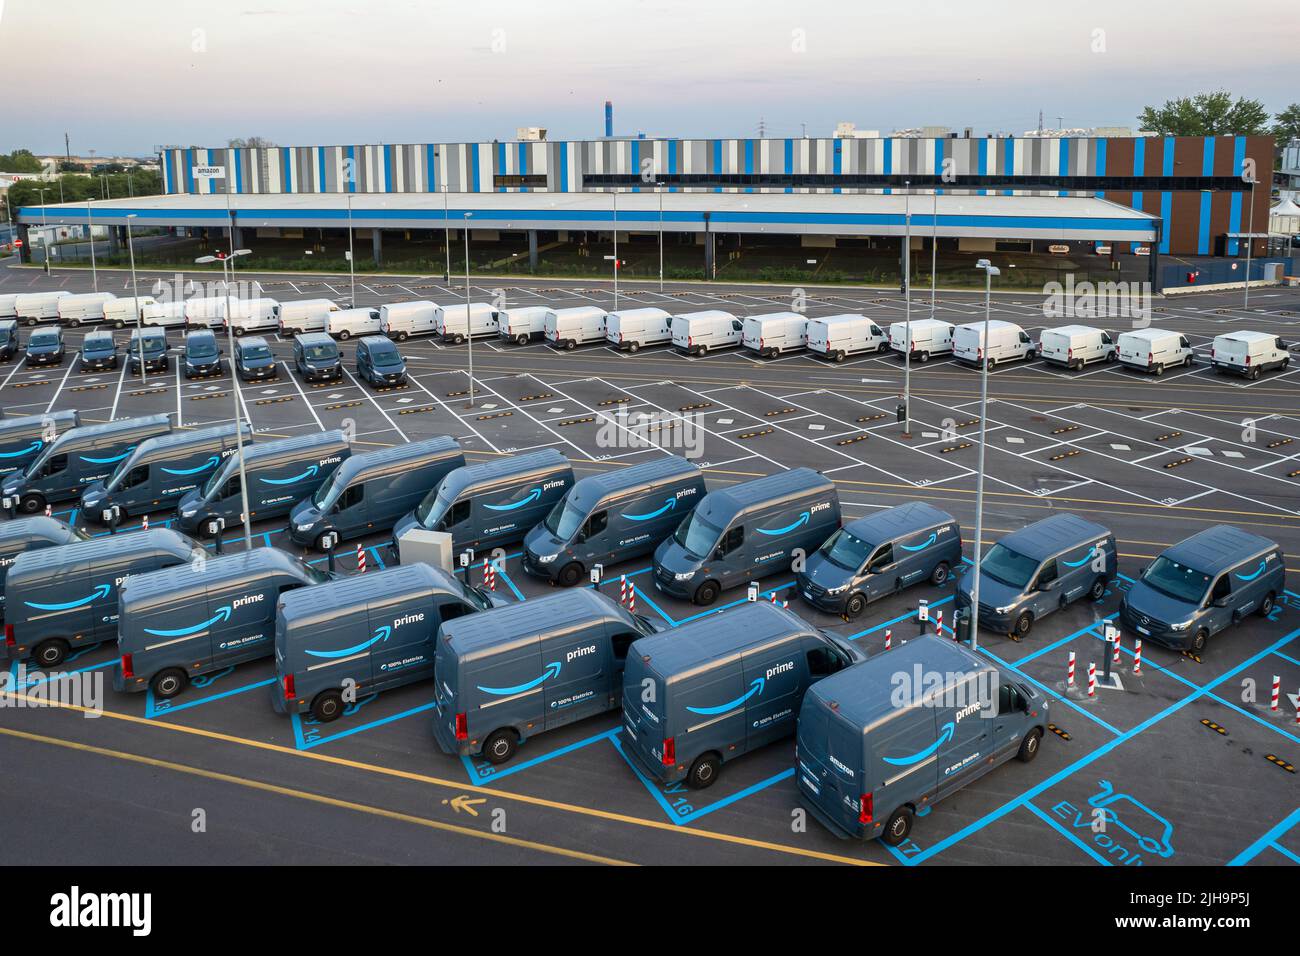 Vue de dessus des camionnettes de livraison électrique Amazon Prime, garées au centre logistique d'Amazon. Turin, Italie - juillet 2022 Banque D'Images